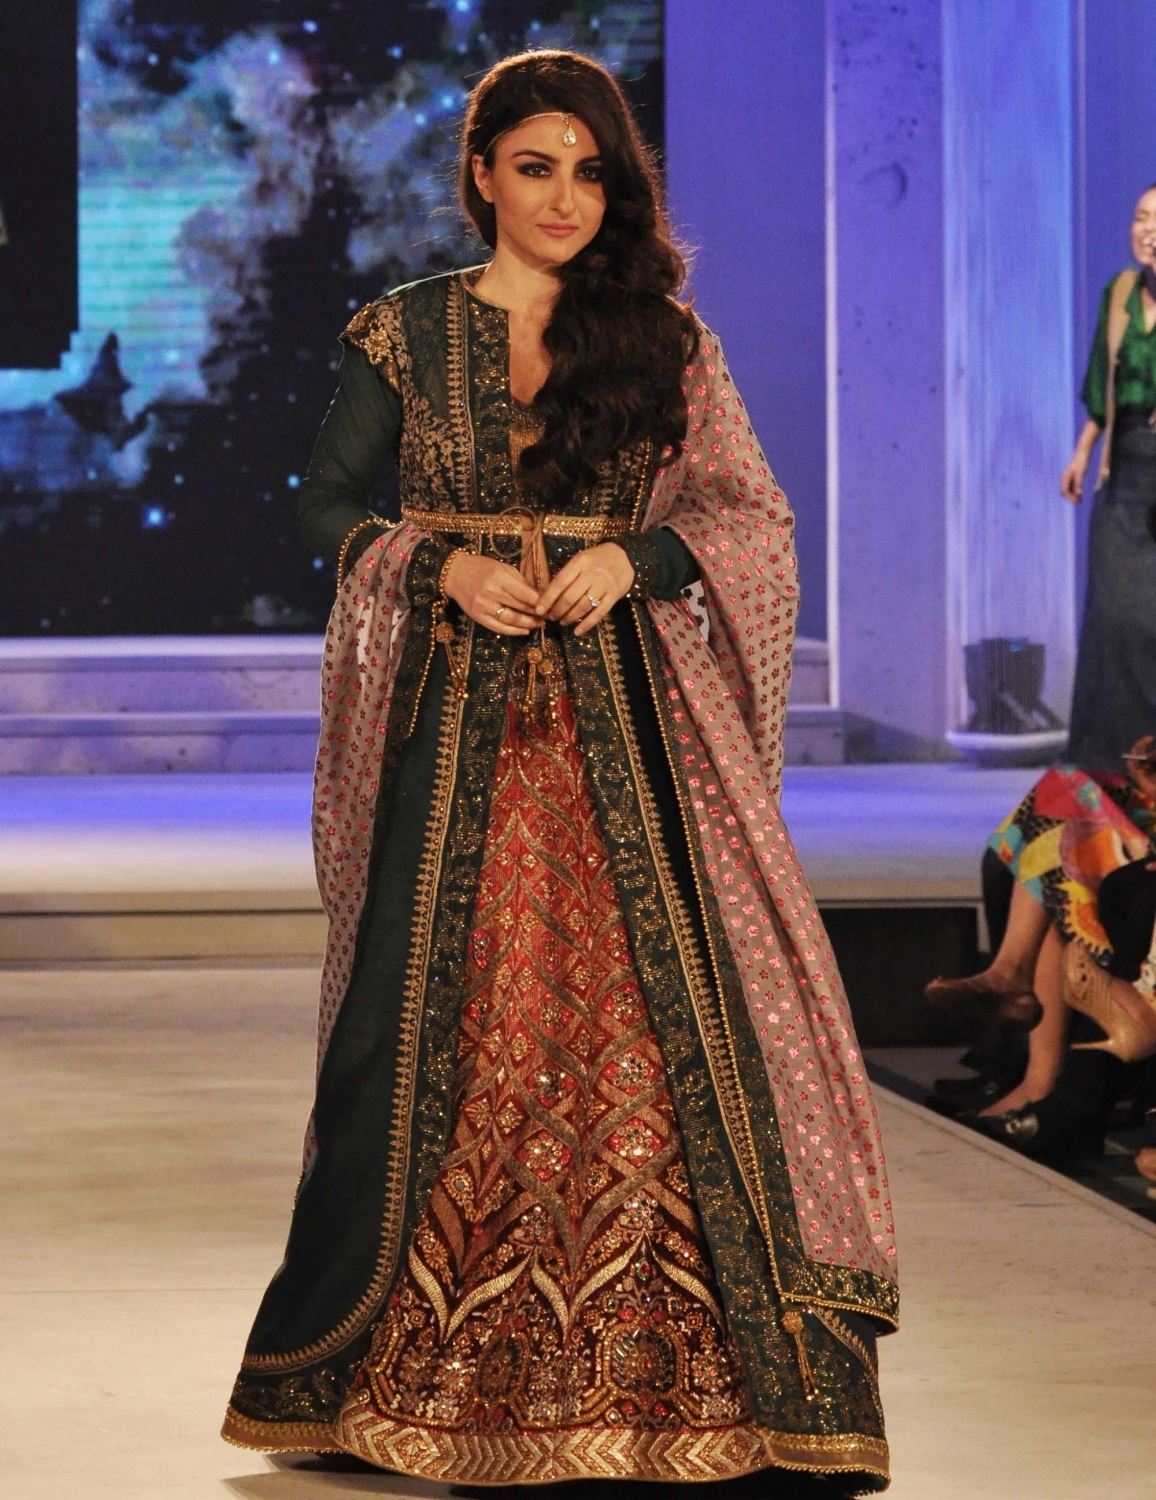 Soha Ali Khan donned the finale design for JJ Valaya at Blenders Pride Fashion Tour.